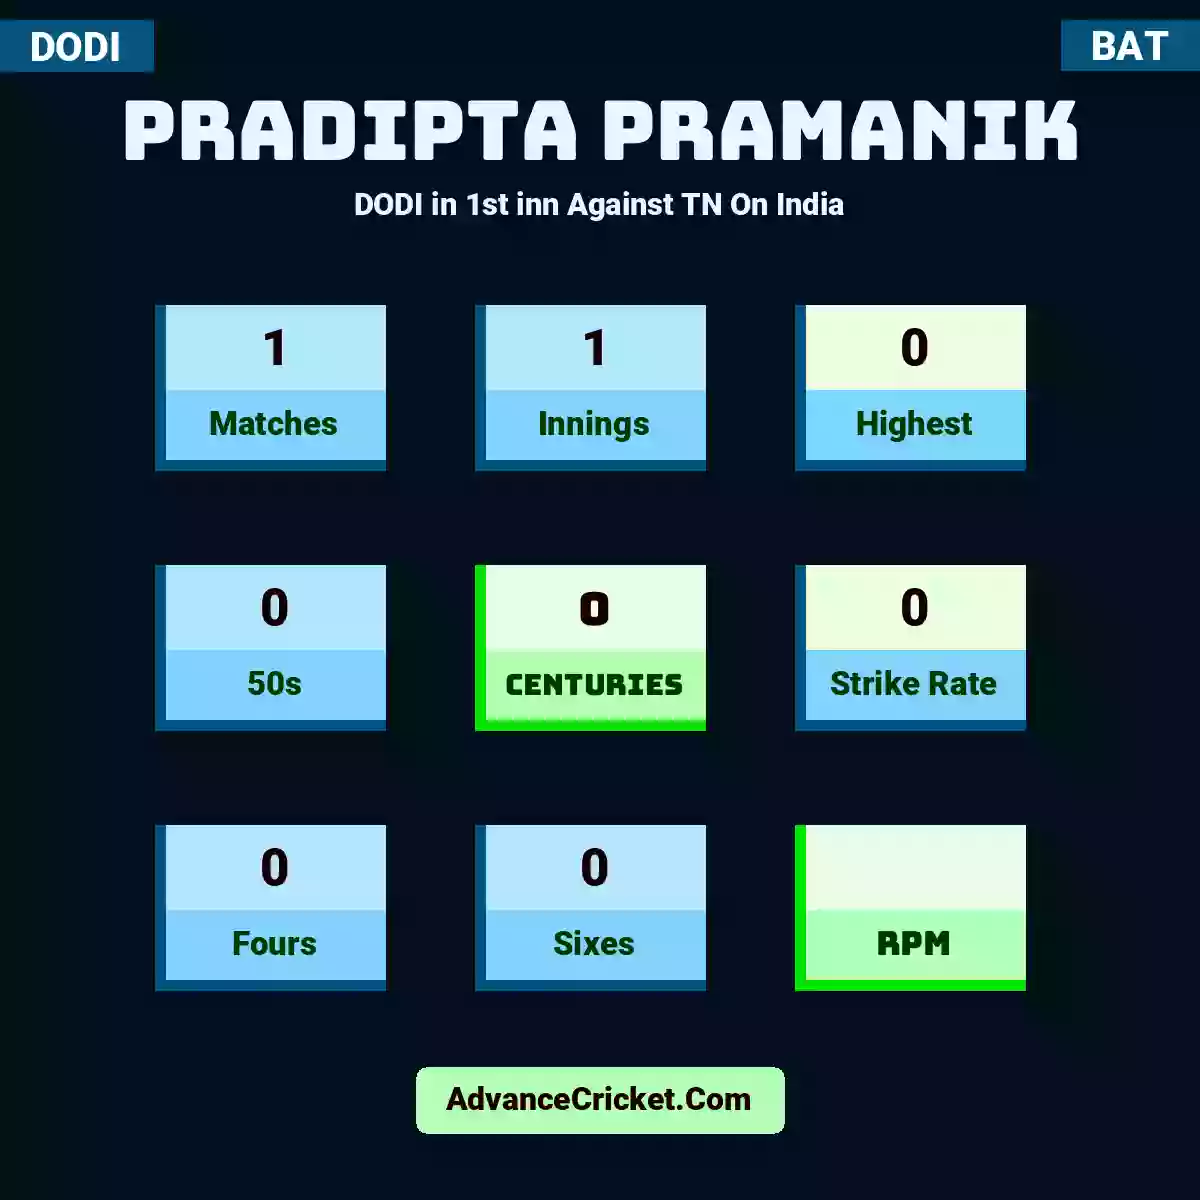 Pradipta Pramanik DODI  in 1st inn Against TN On India, Pradipta Pramanik played 1 matches, scored 0 runs as highest, 0 half-centuries, and 0 centuries, with a strike rate of 0. P.Pramanik hit 0 fours and 0 sixes.